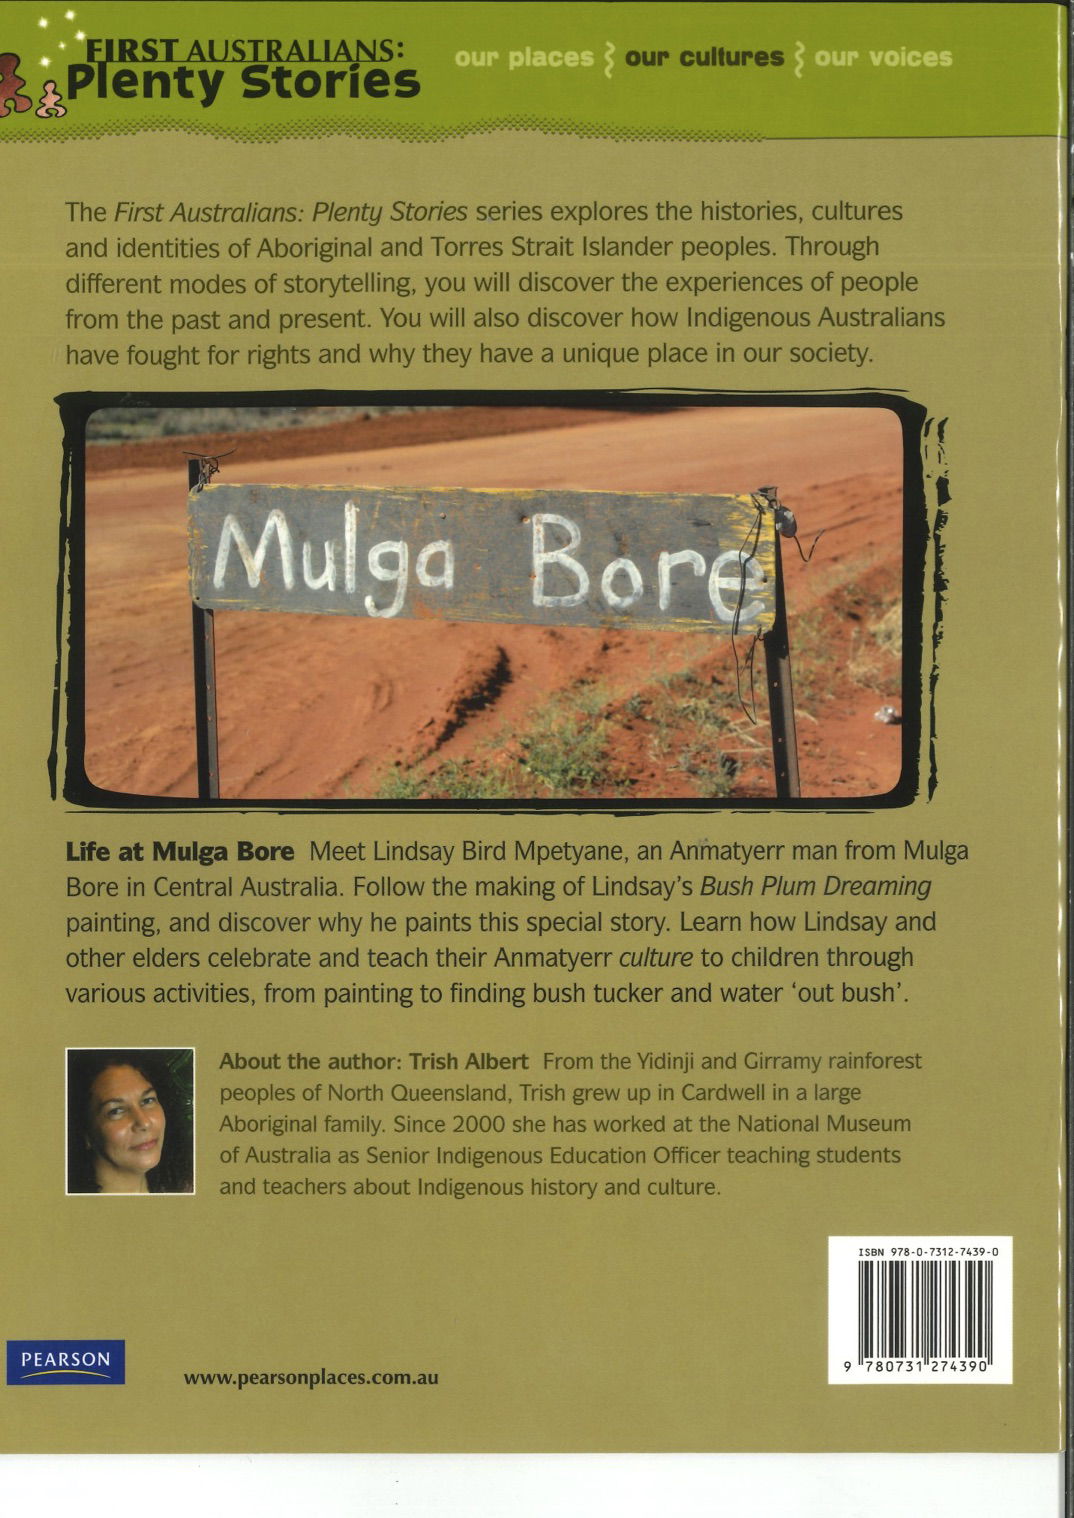 Life at Mulga Bore (back cover)